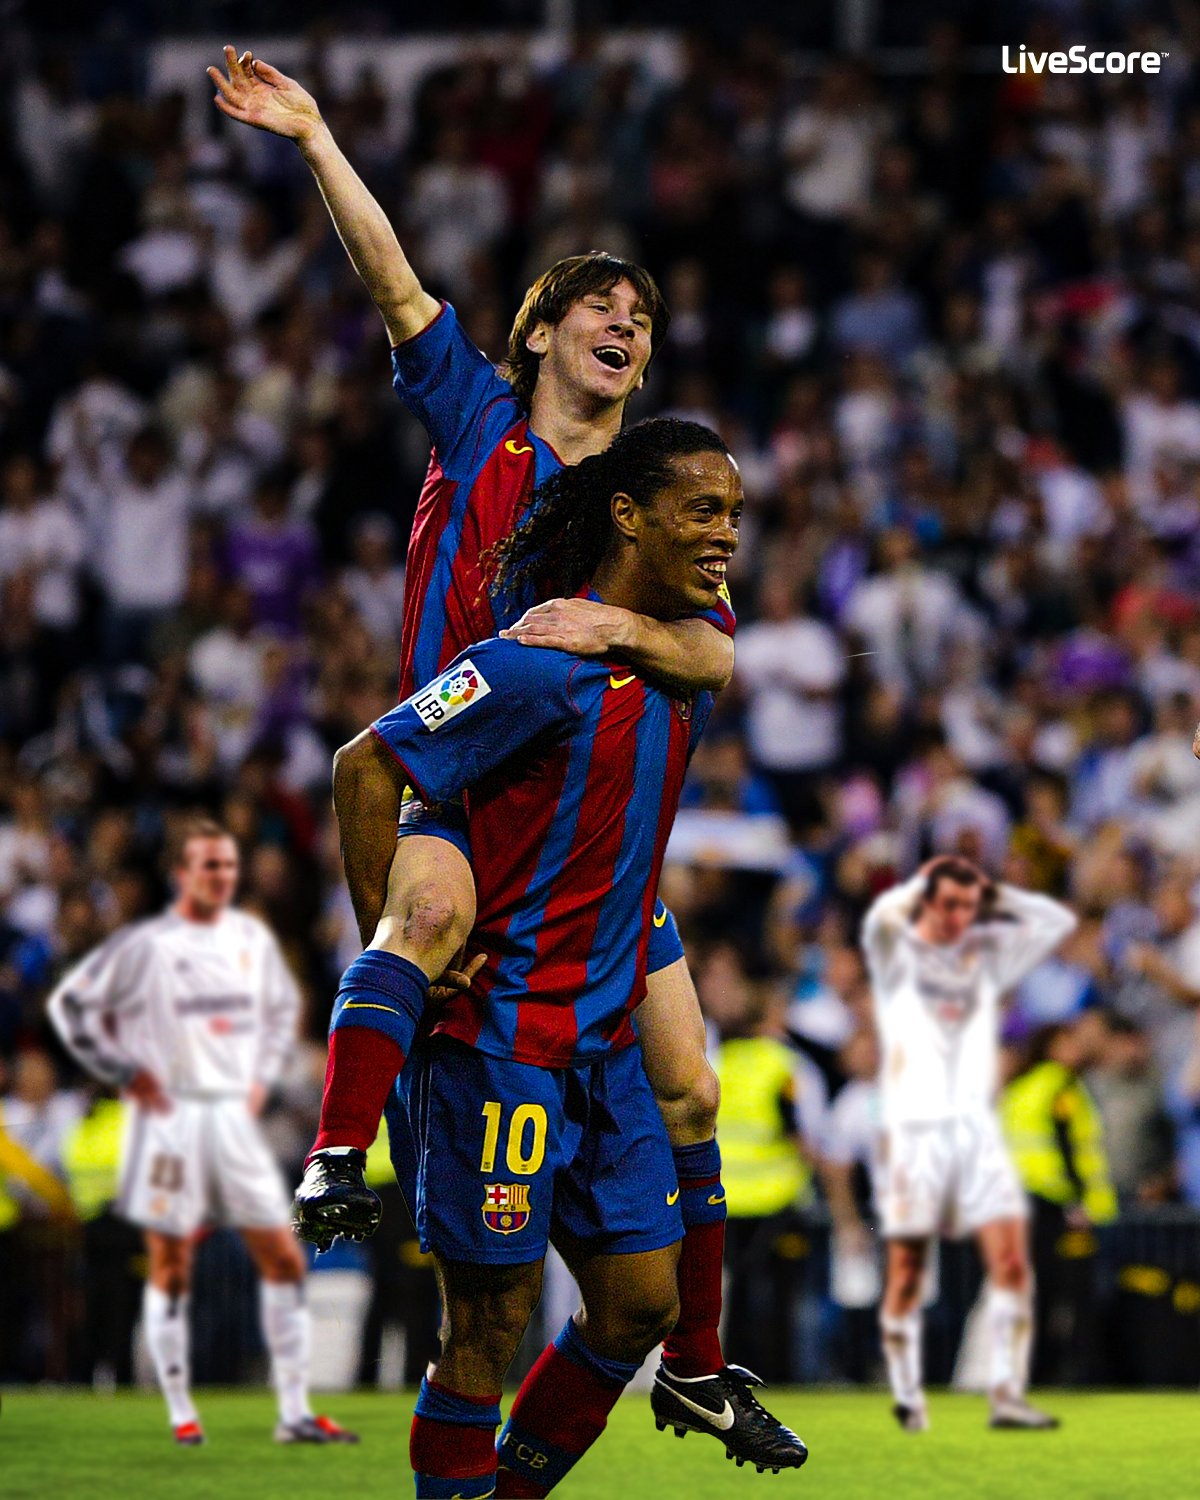 Chưa kịp bất ngờ đã có sự phối hợp của Messi và Ronaldinho trên Twitter. Đồng thời chia sẻ những khoảnh khắc đầy ý nghĩa và hài hước, cặp đôi này chắc chắn sẽ mang đến cho bạn một nguồn cảm hứng vô tận để cùng chia sẻ trên mạng xã hội.